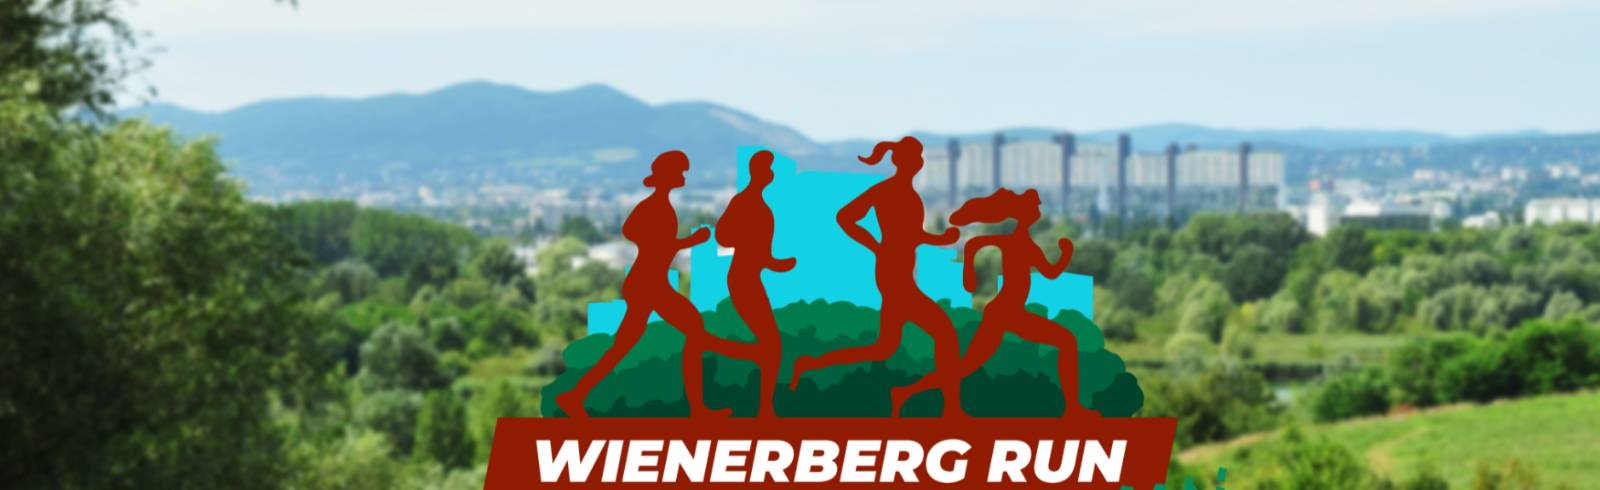 Wienerberg Run diesmal nur virtuell